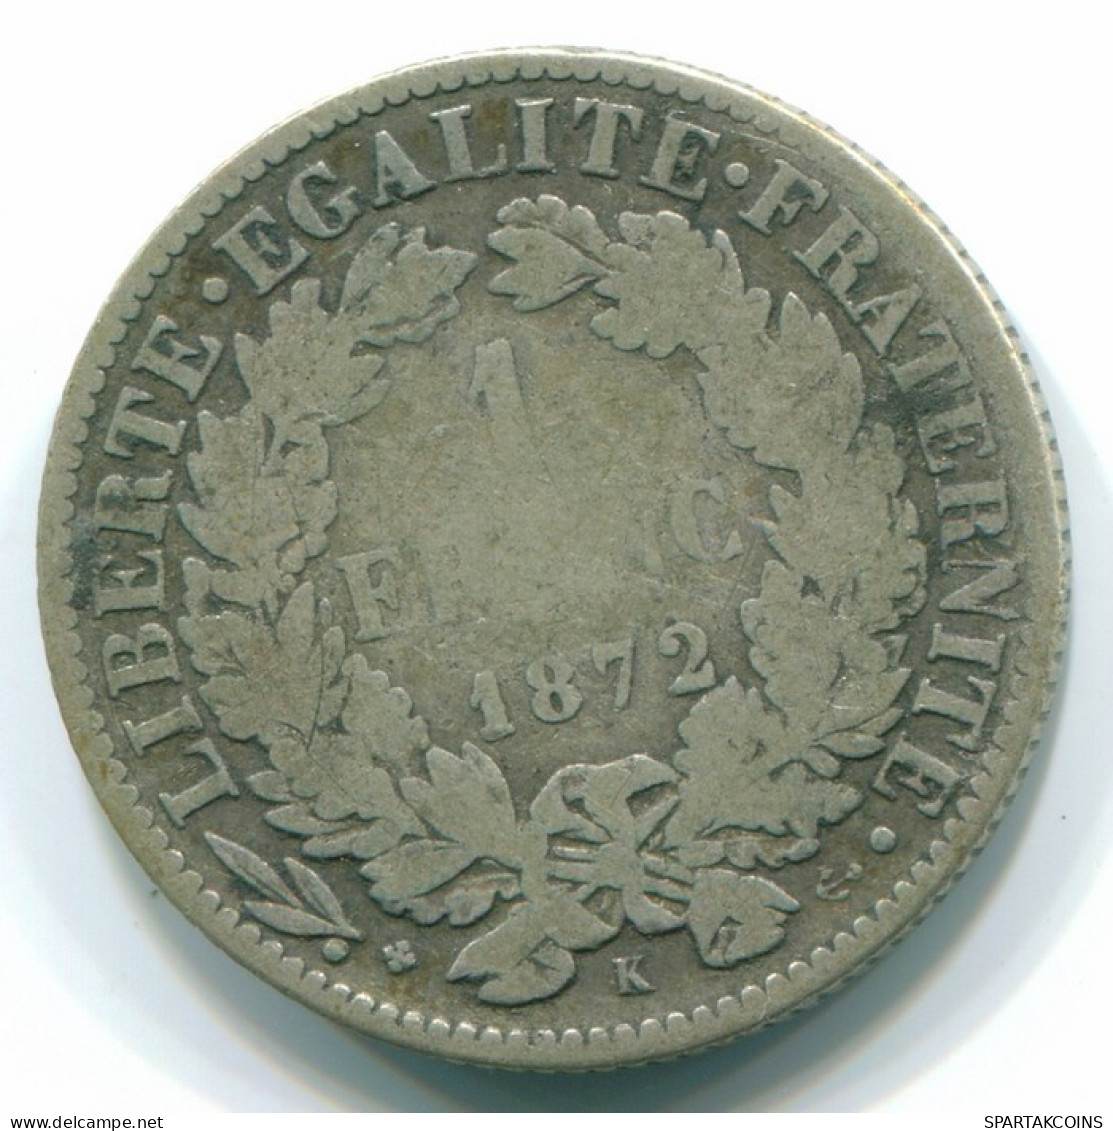 1 FRANC 1872 K FRANCE Coin CERES Silver #FR1173.10.U.A - 1 Franc